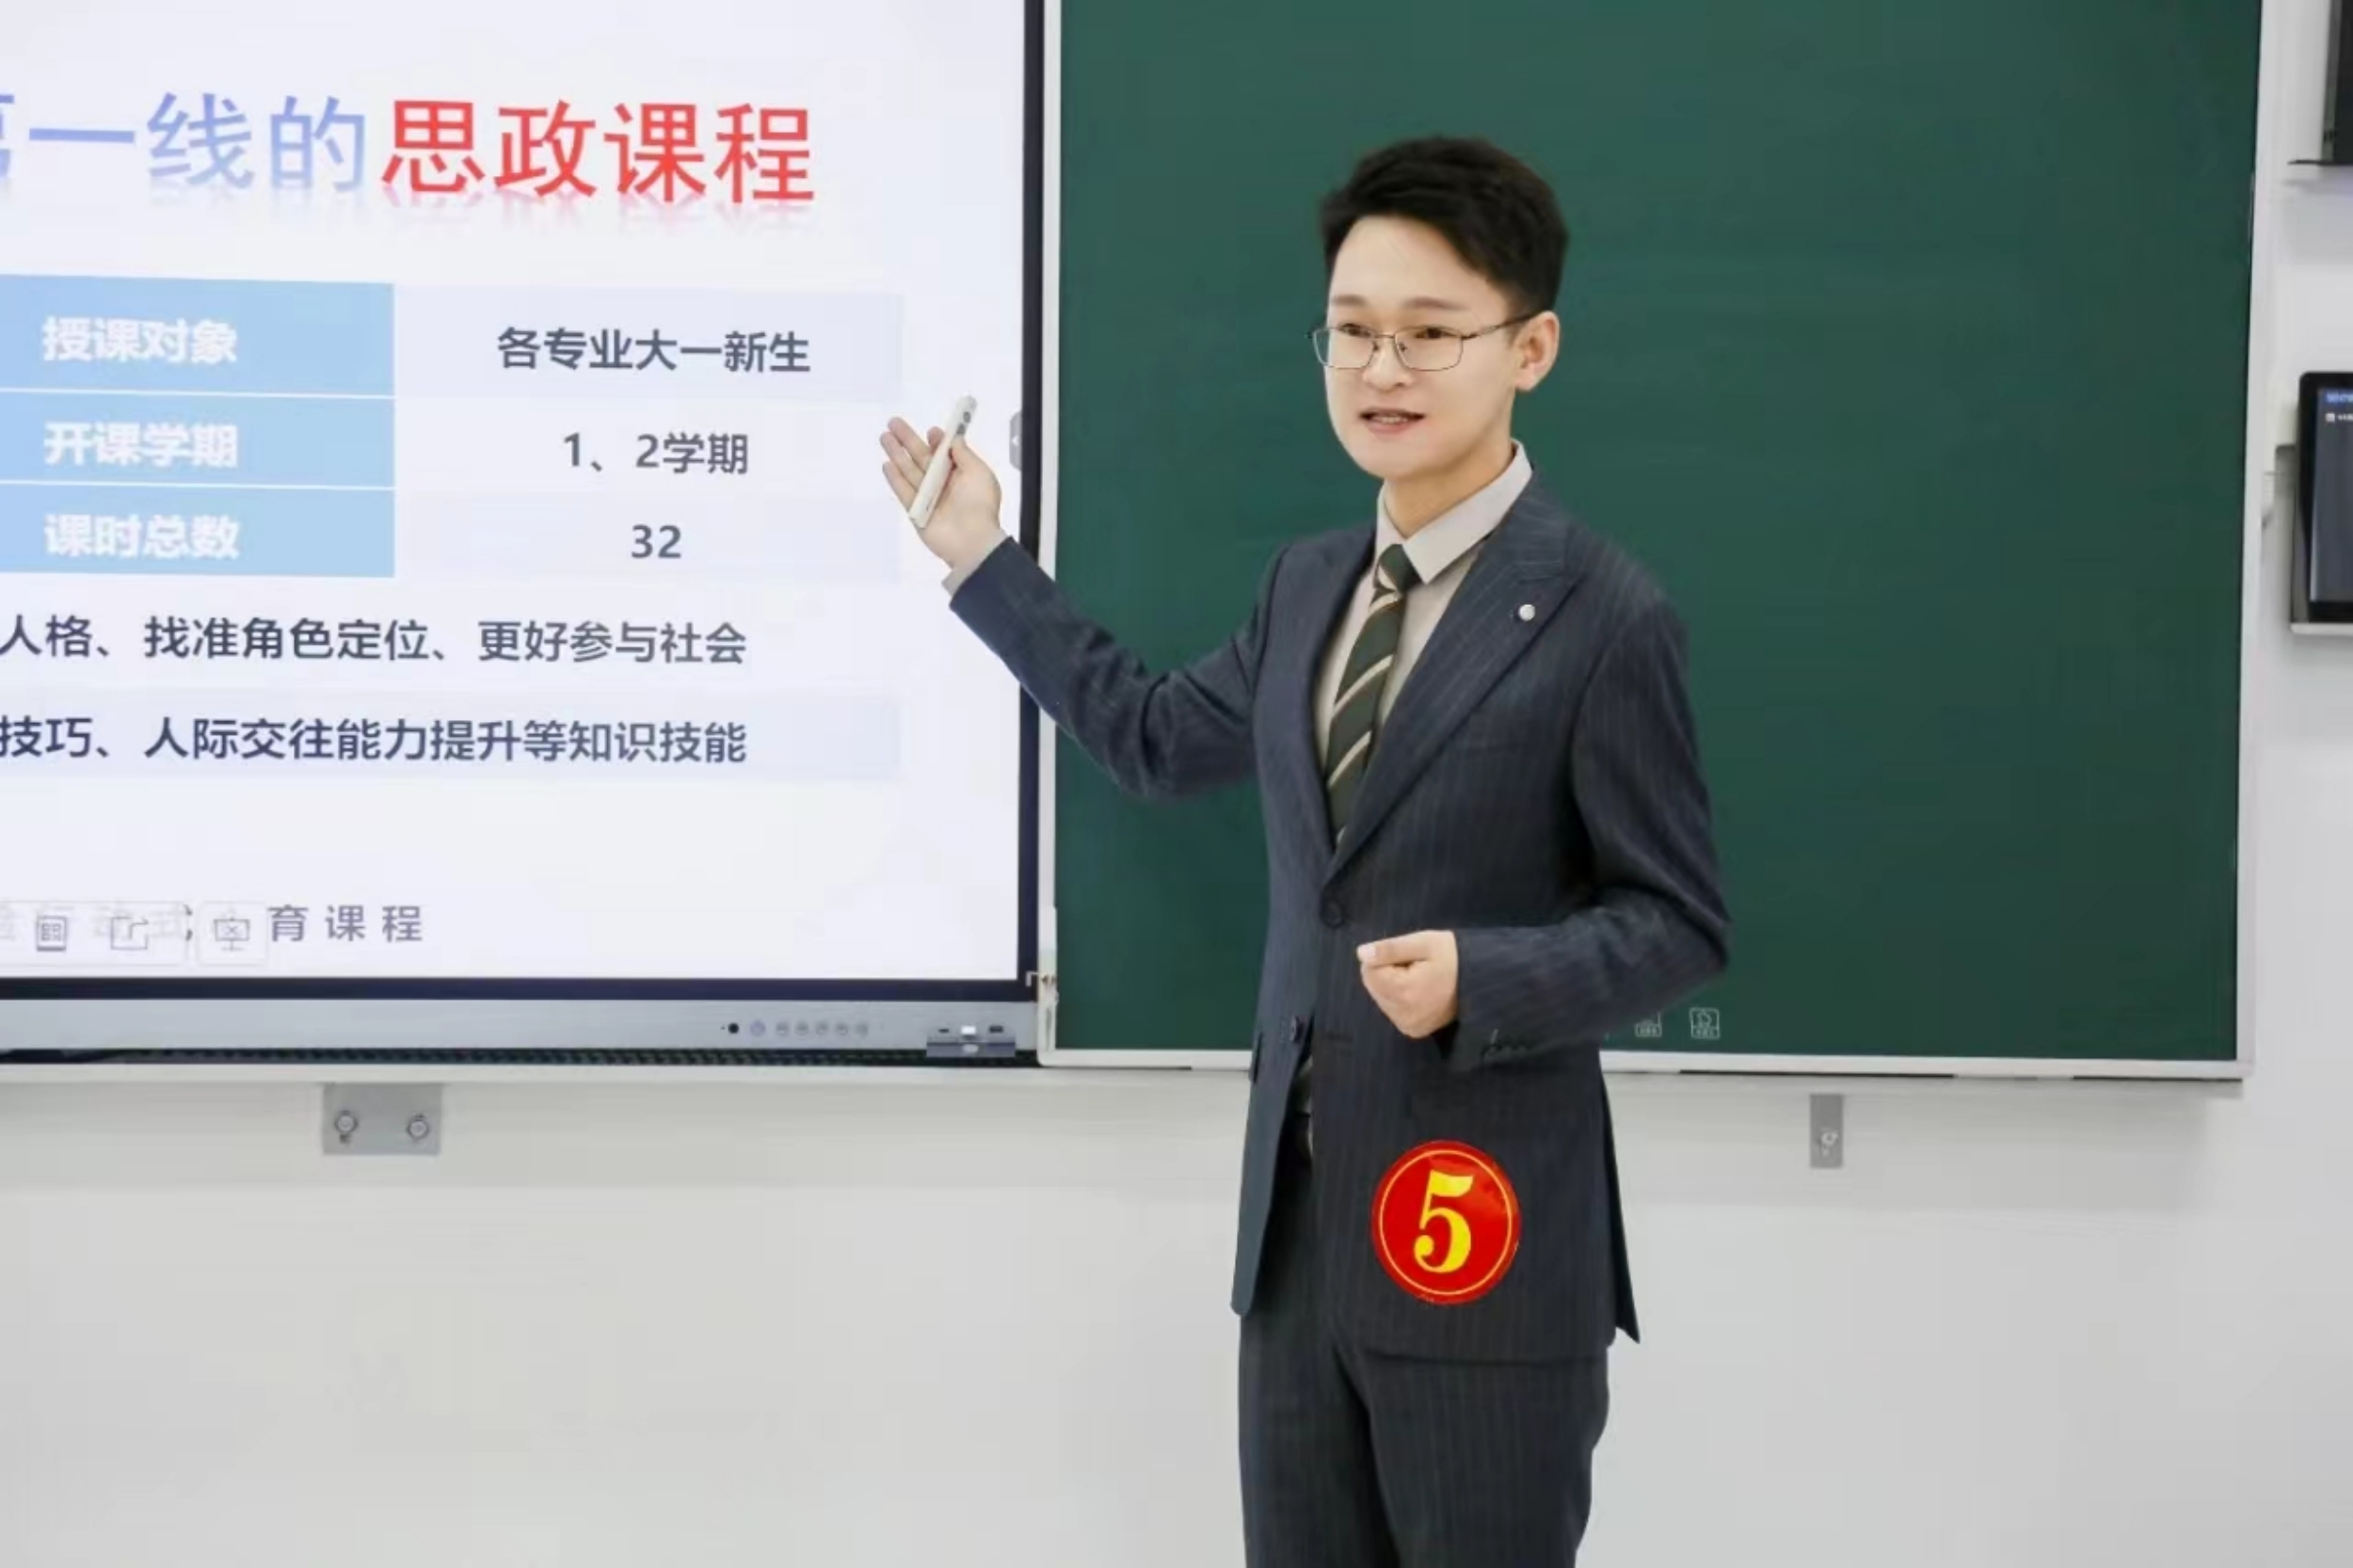 会员王文达团队在第四届宁夏高校教师教学创新大赛中获新文科组副高及以下一等奖.jpg